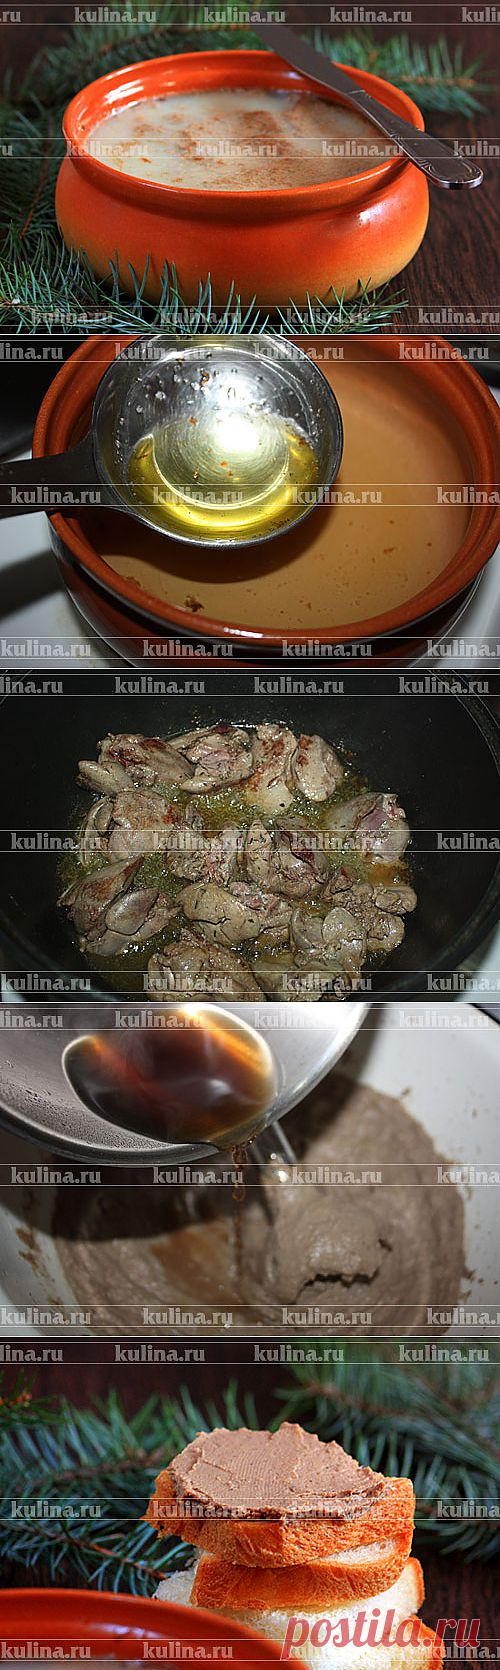 Паштет из печени по-французски – рецепт приготовления с фото от Kulina.Ru